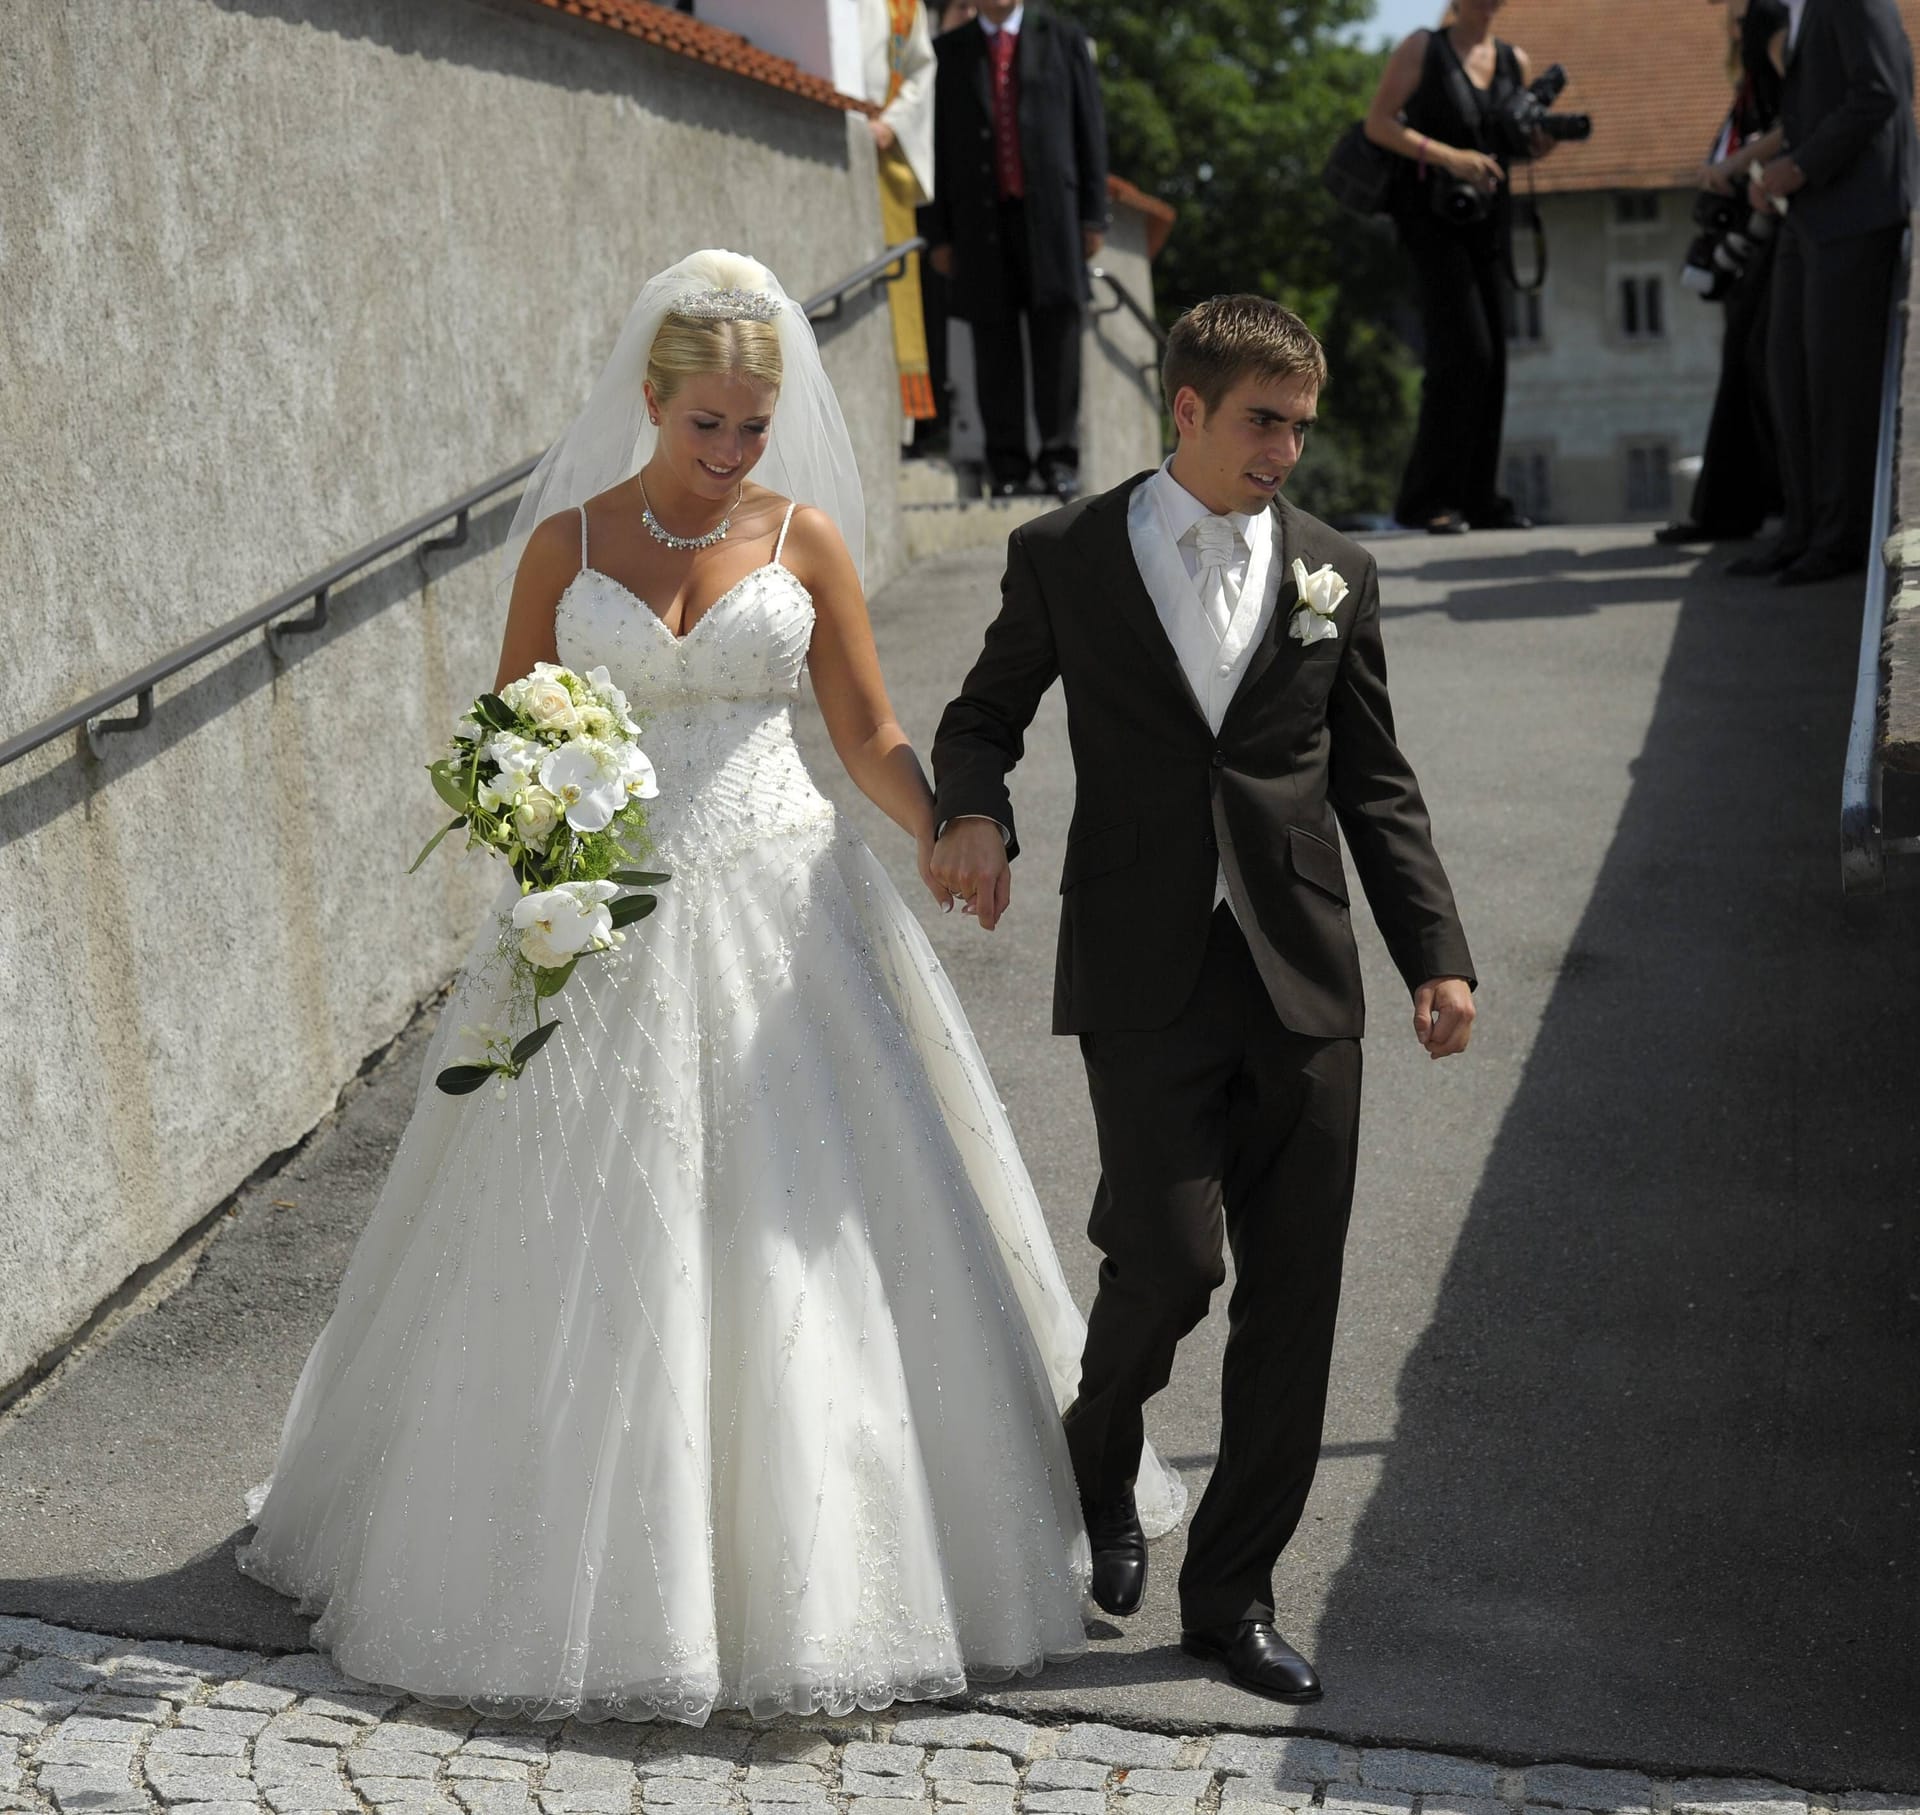 Die Hochzeit von Philipp Lahm und Claudia Schattenberg im bayerischen Aying 2010